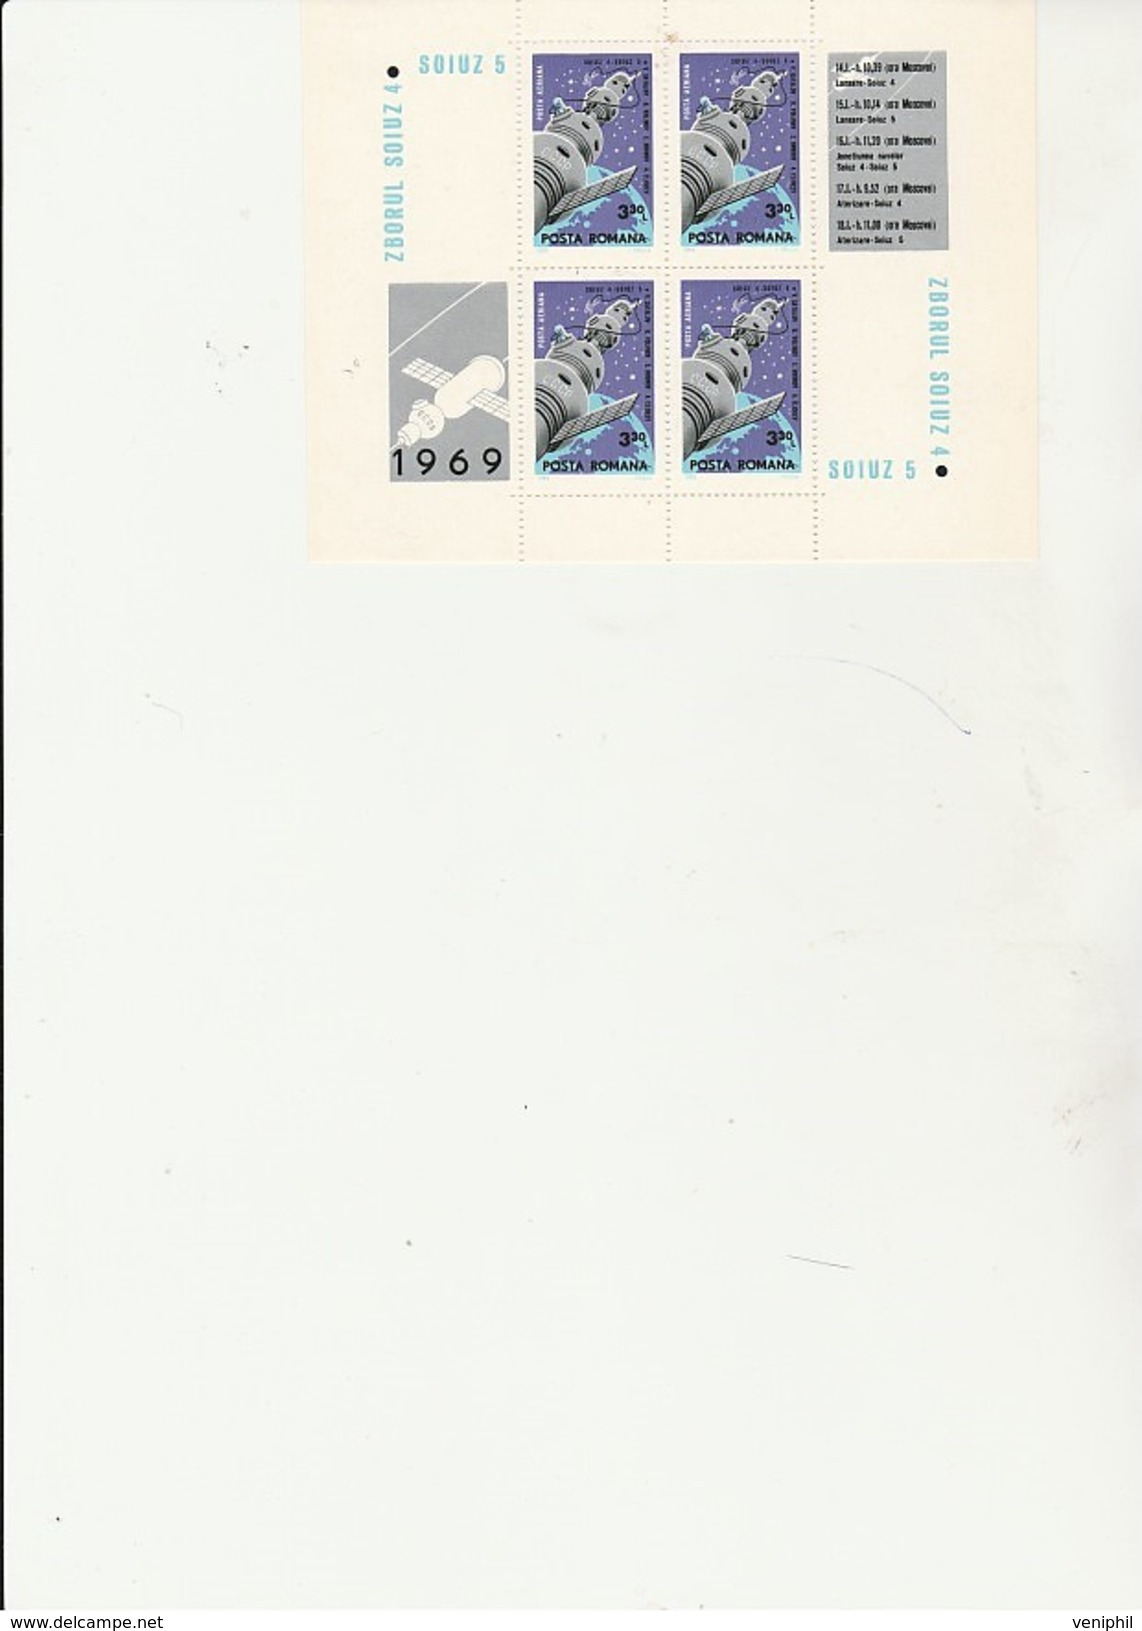 ROUMANIE - BLOC FEUILLET N° 72  SOIUZ 5 - NEUF  ANNEE 1968  COTE : 18,50 € - Europe